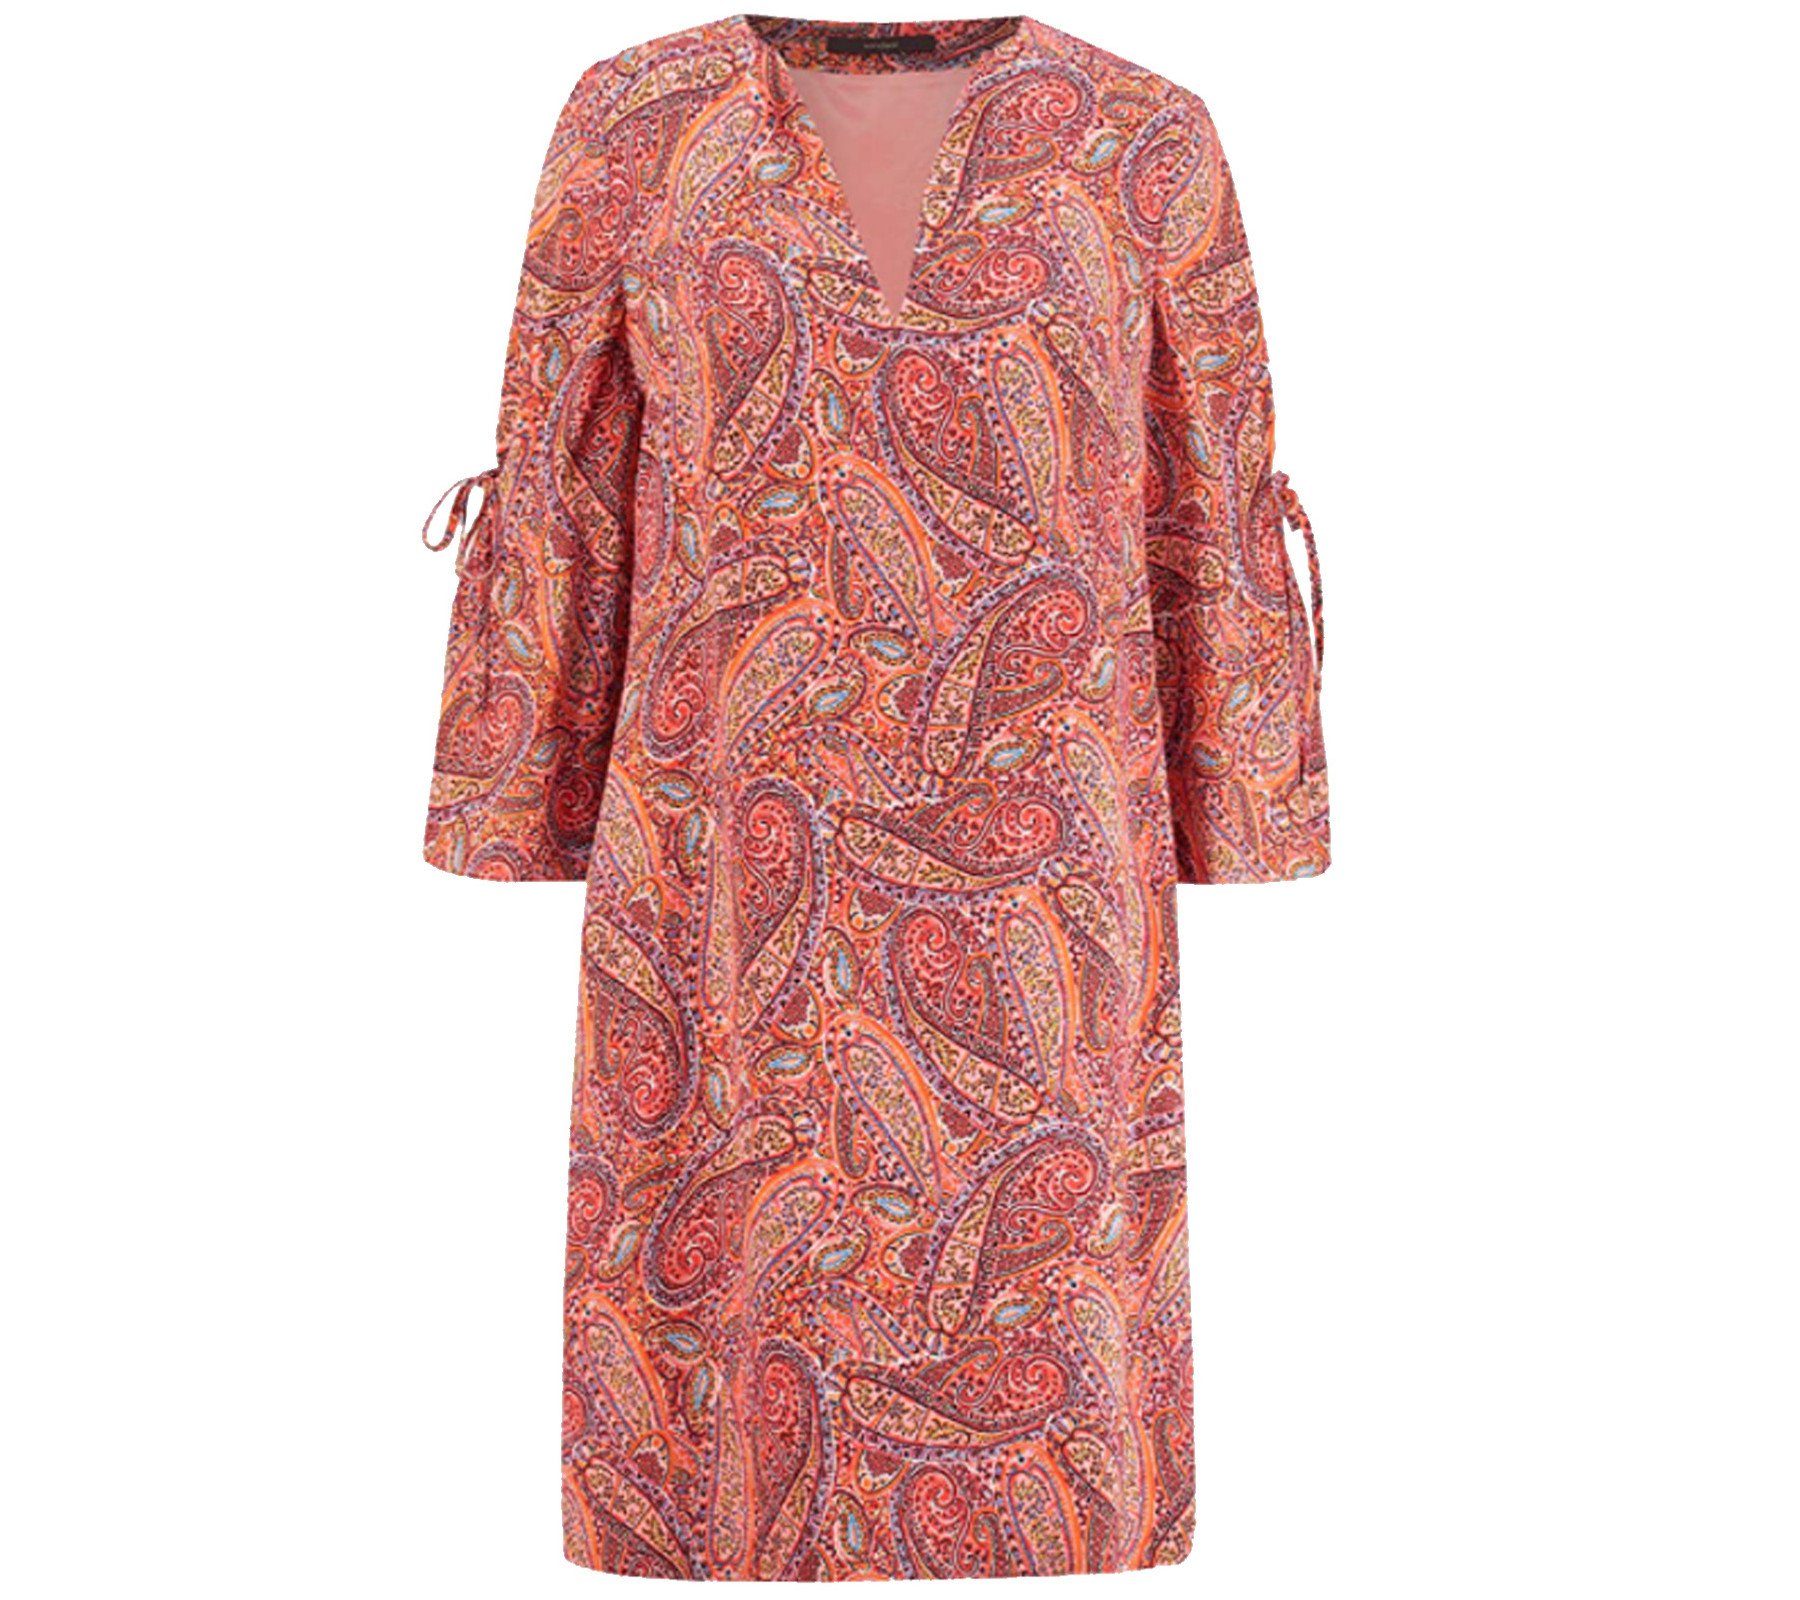 Windsor Sommerkleid »windsor. Abend-Kleid schickes Damen Ausgeh-Kleid mit  Allover-Muster und 3/4-Ärmeln Freizeit-Kleid Orange« online kaufen | OTTO